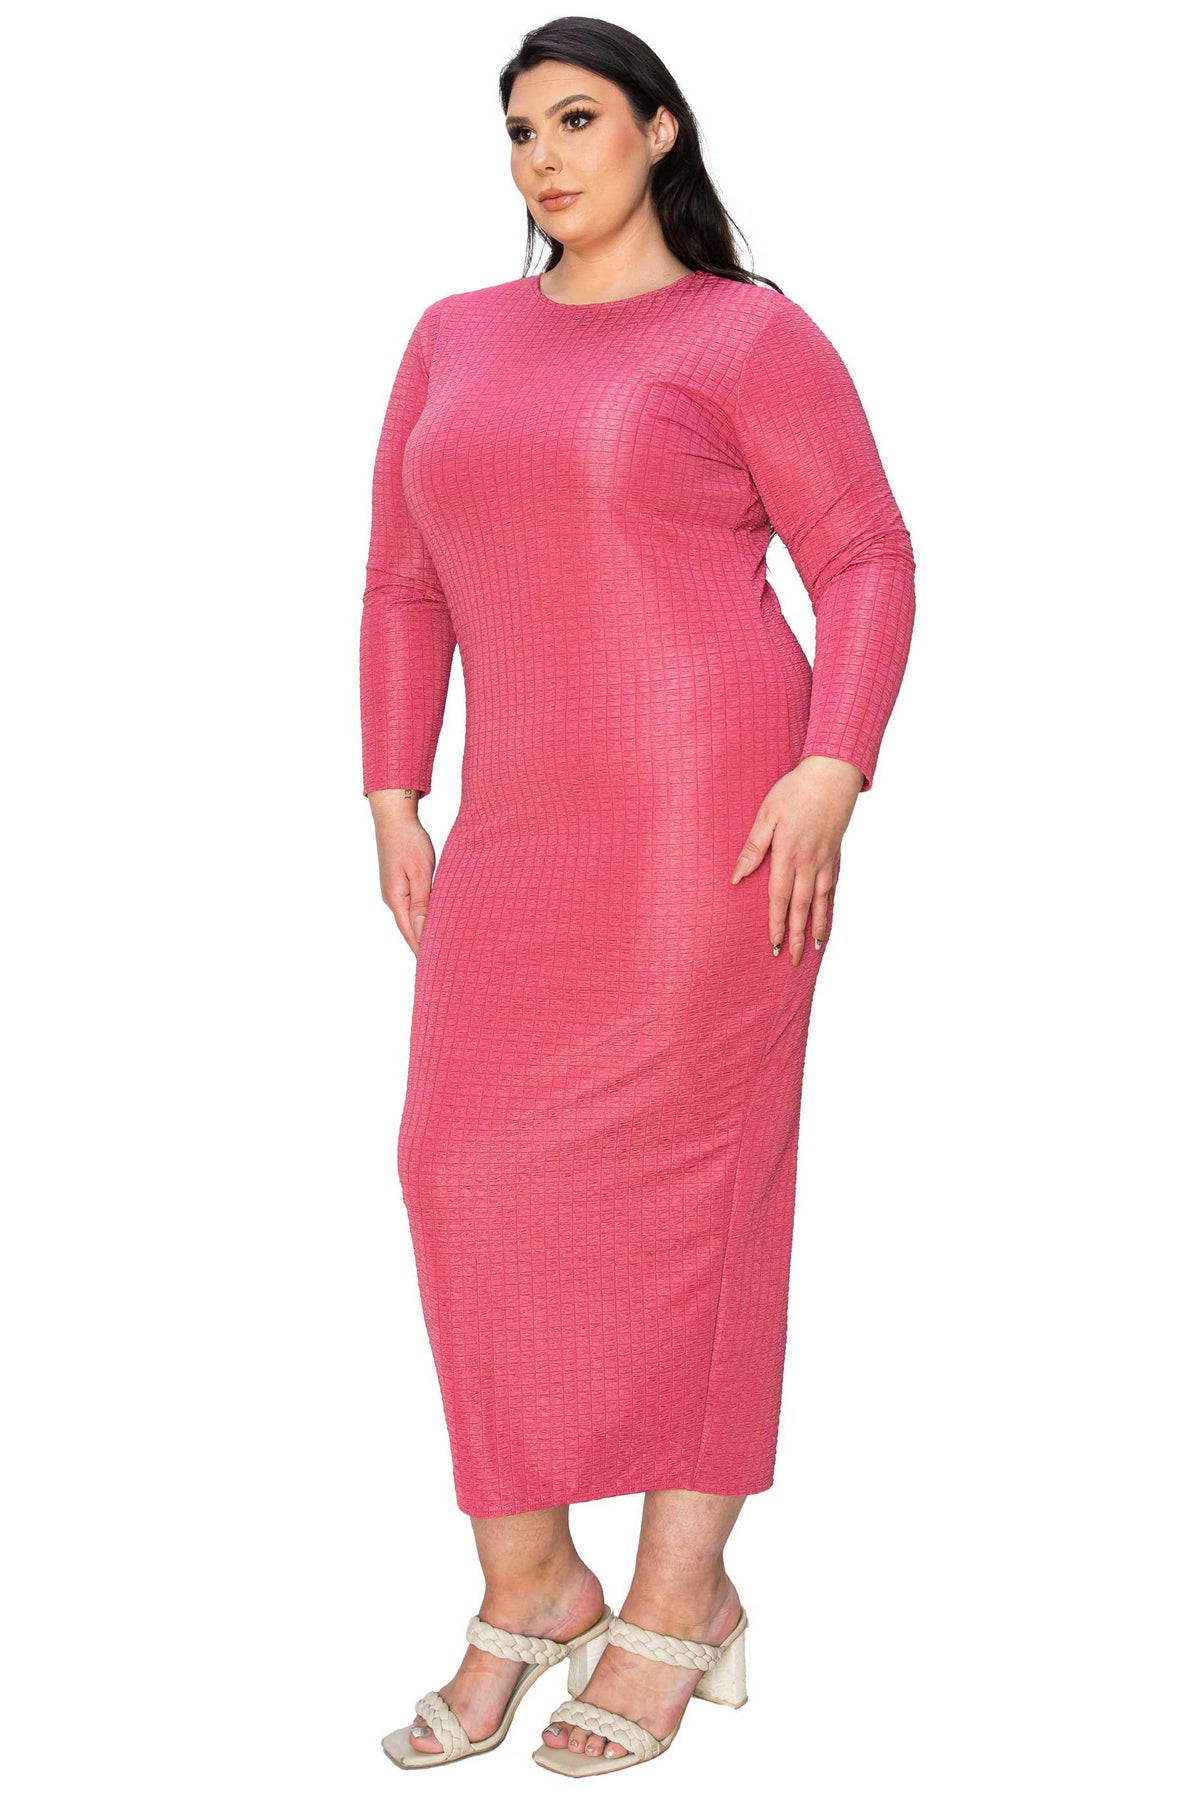 Kylo Textured Bodycon Dress